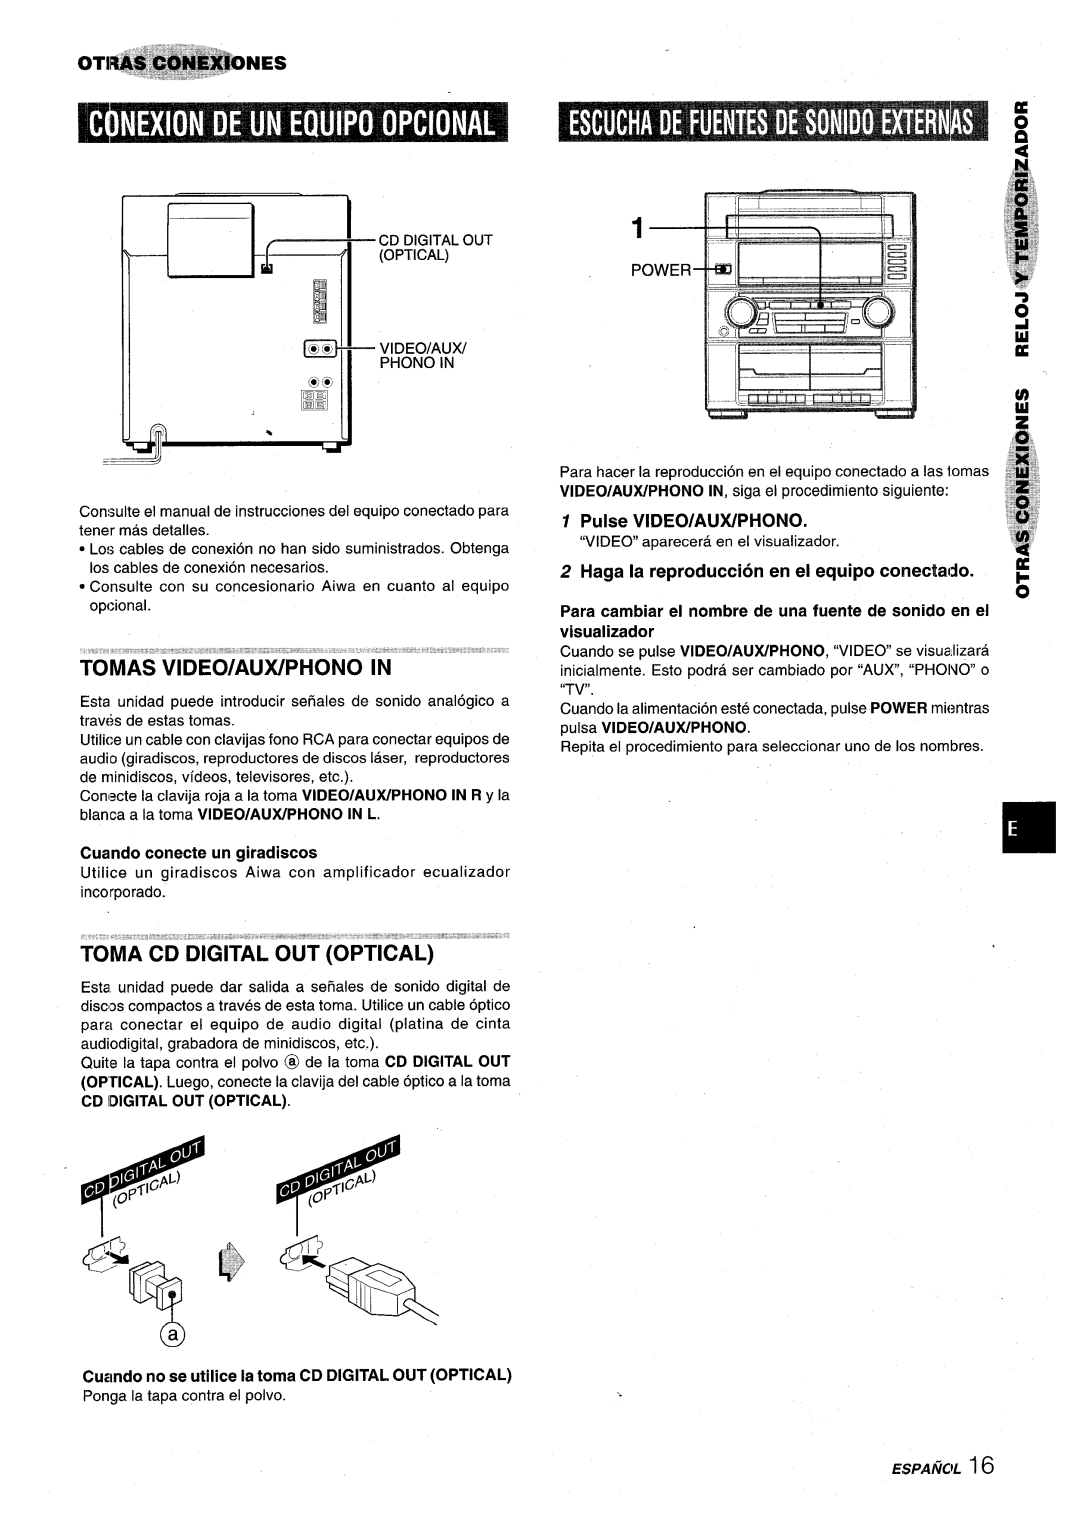 Aiwa XR-M75 manual ‘q ?%, Pongala tapacontrael polvo, Pulse VIDEO/AUX/PHONO, Haga la reproduction en el equipo conectado 